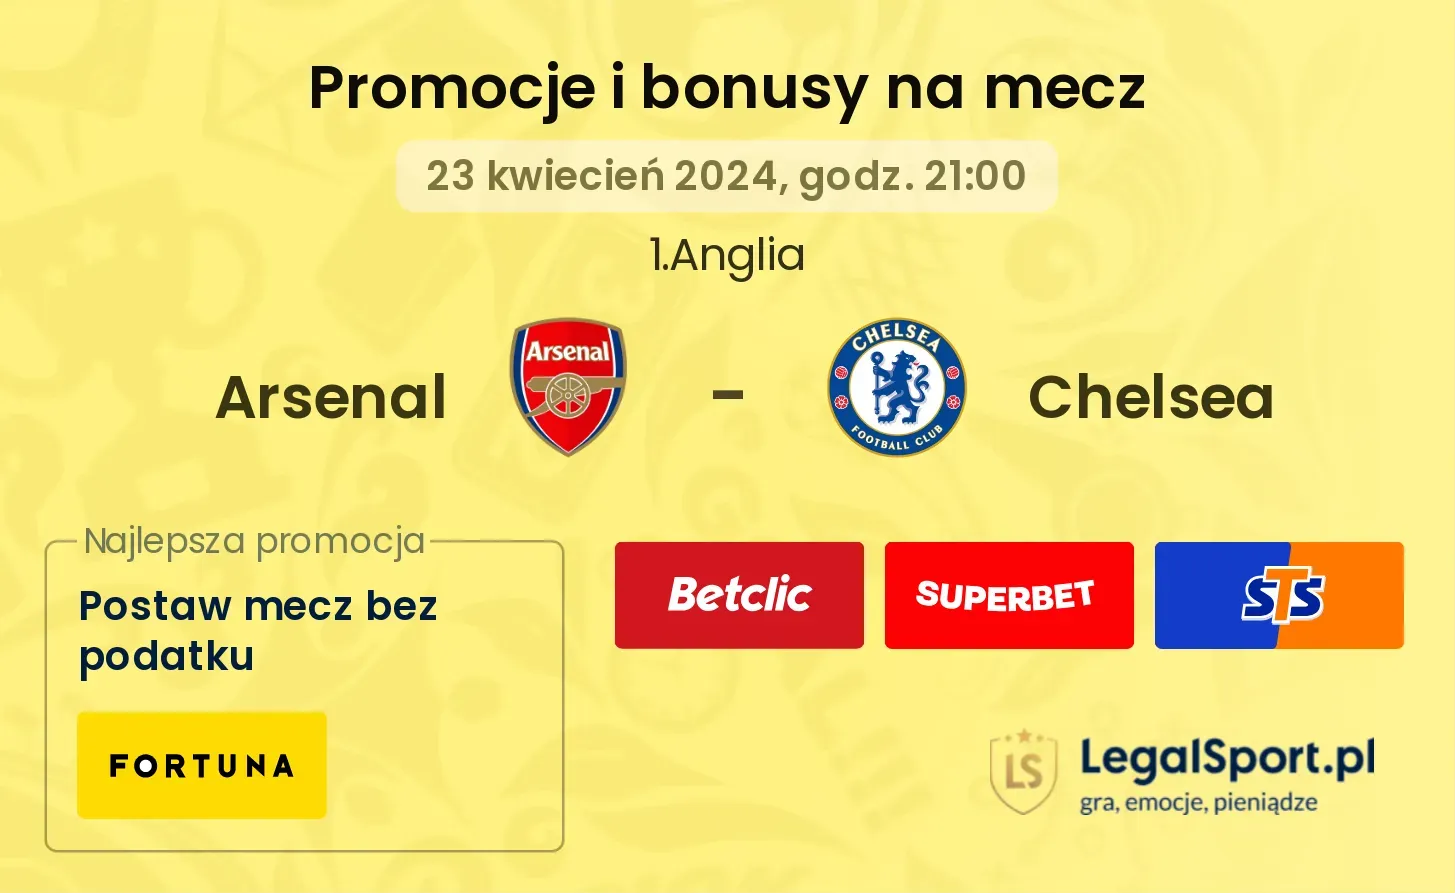 Arsenal - Chelsea promocje bonusy na mecz